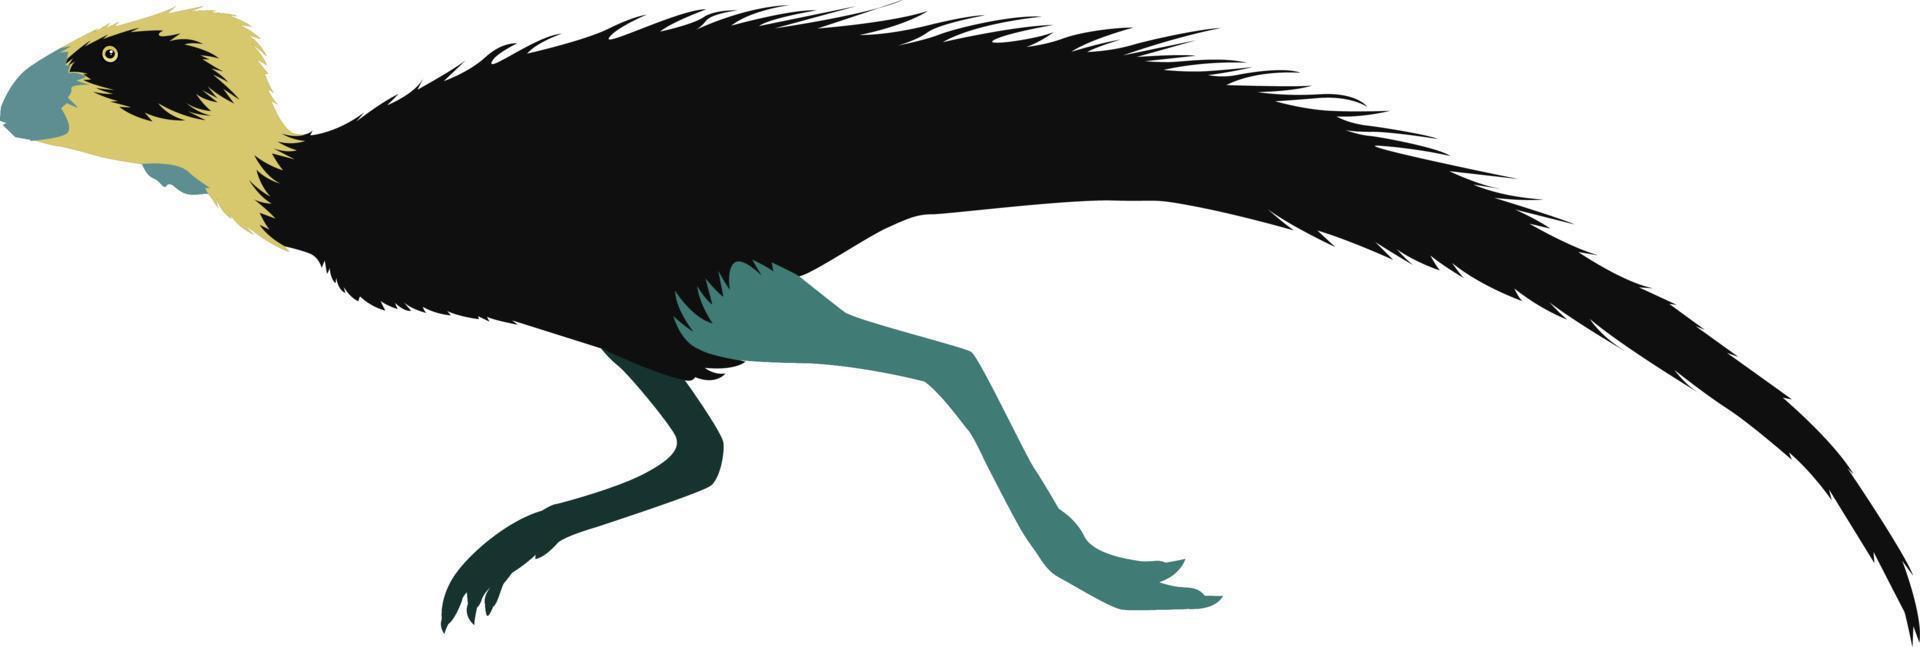 pisanosaurus, illustration, vektor på vit bakgrund.